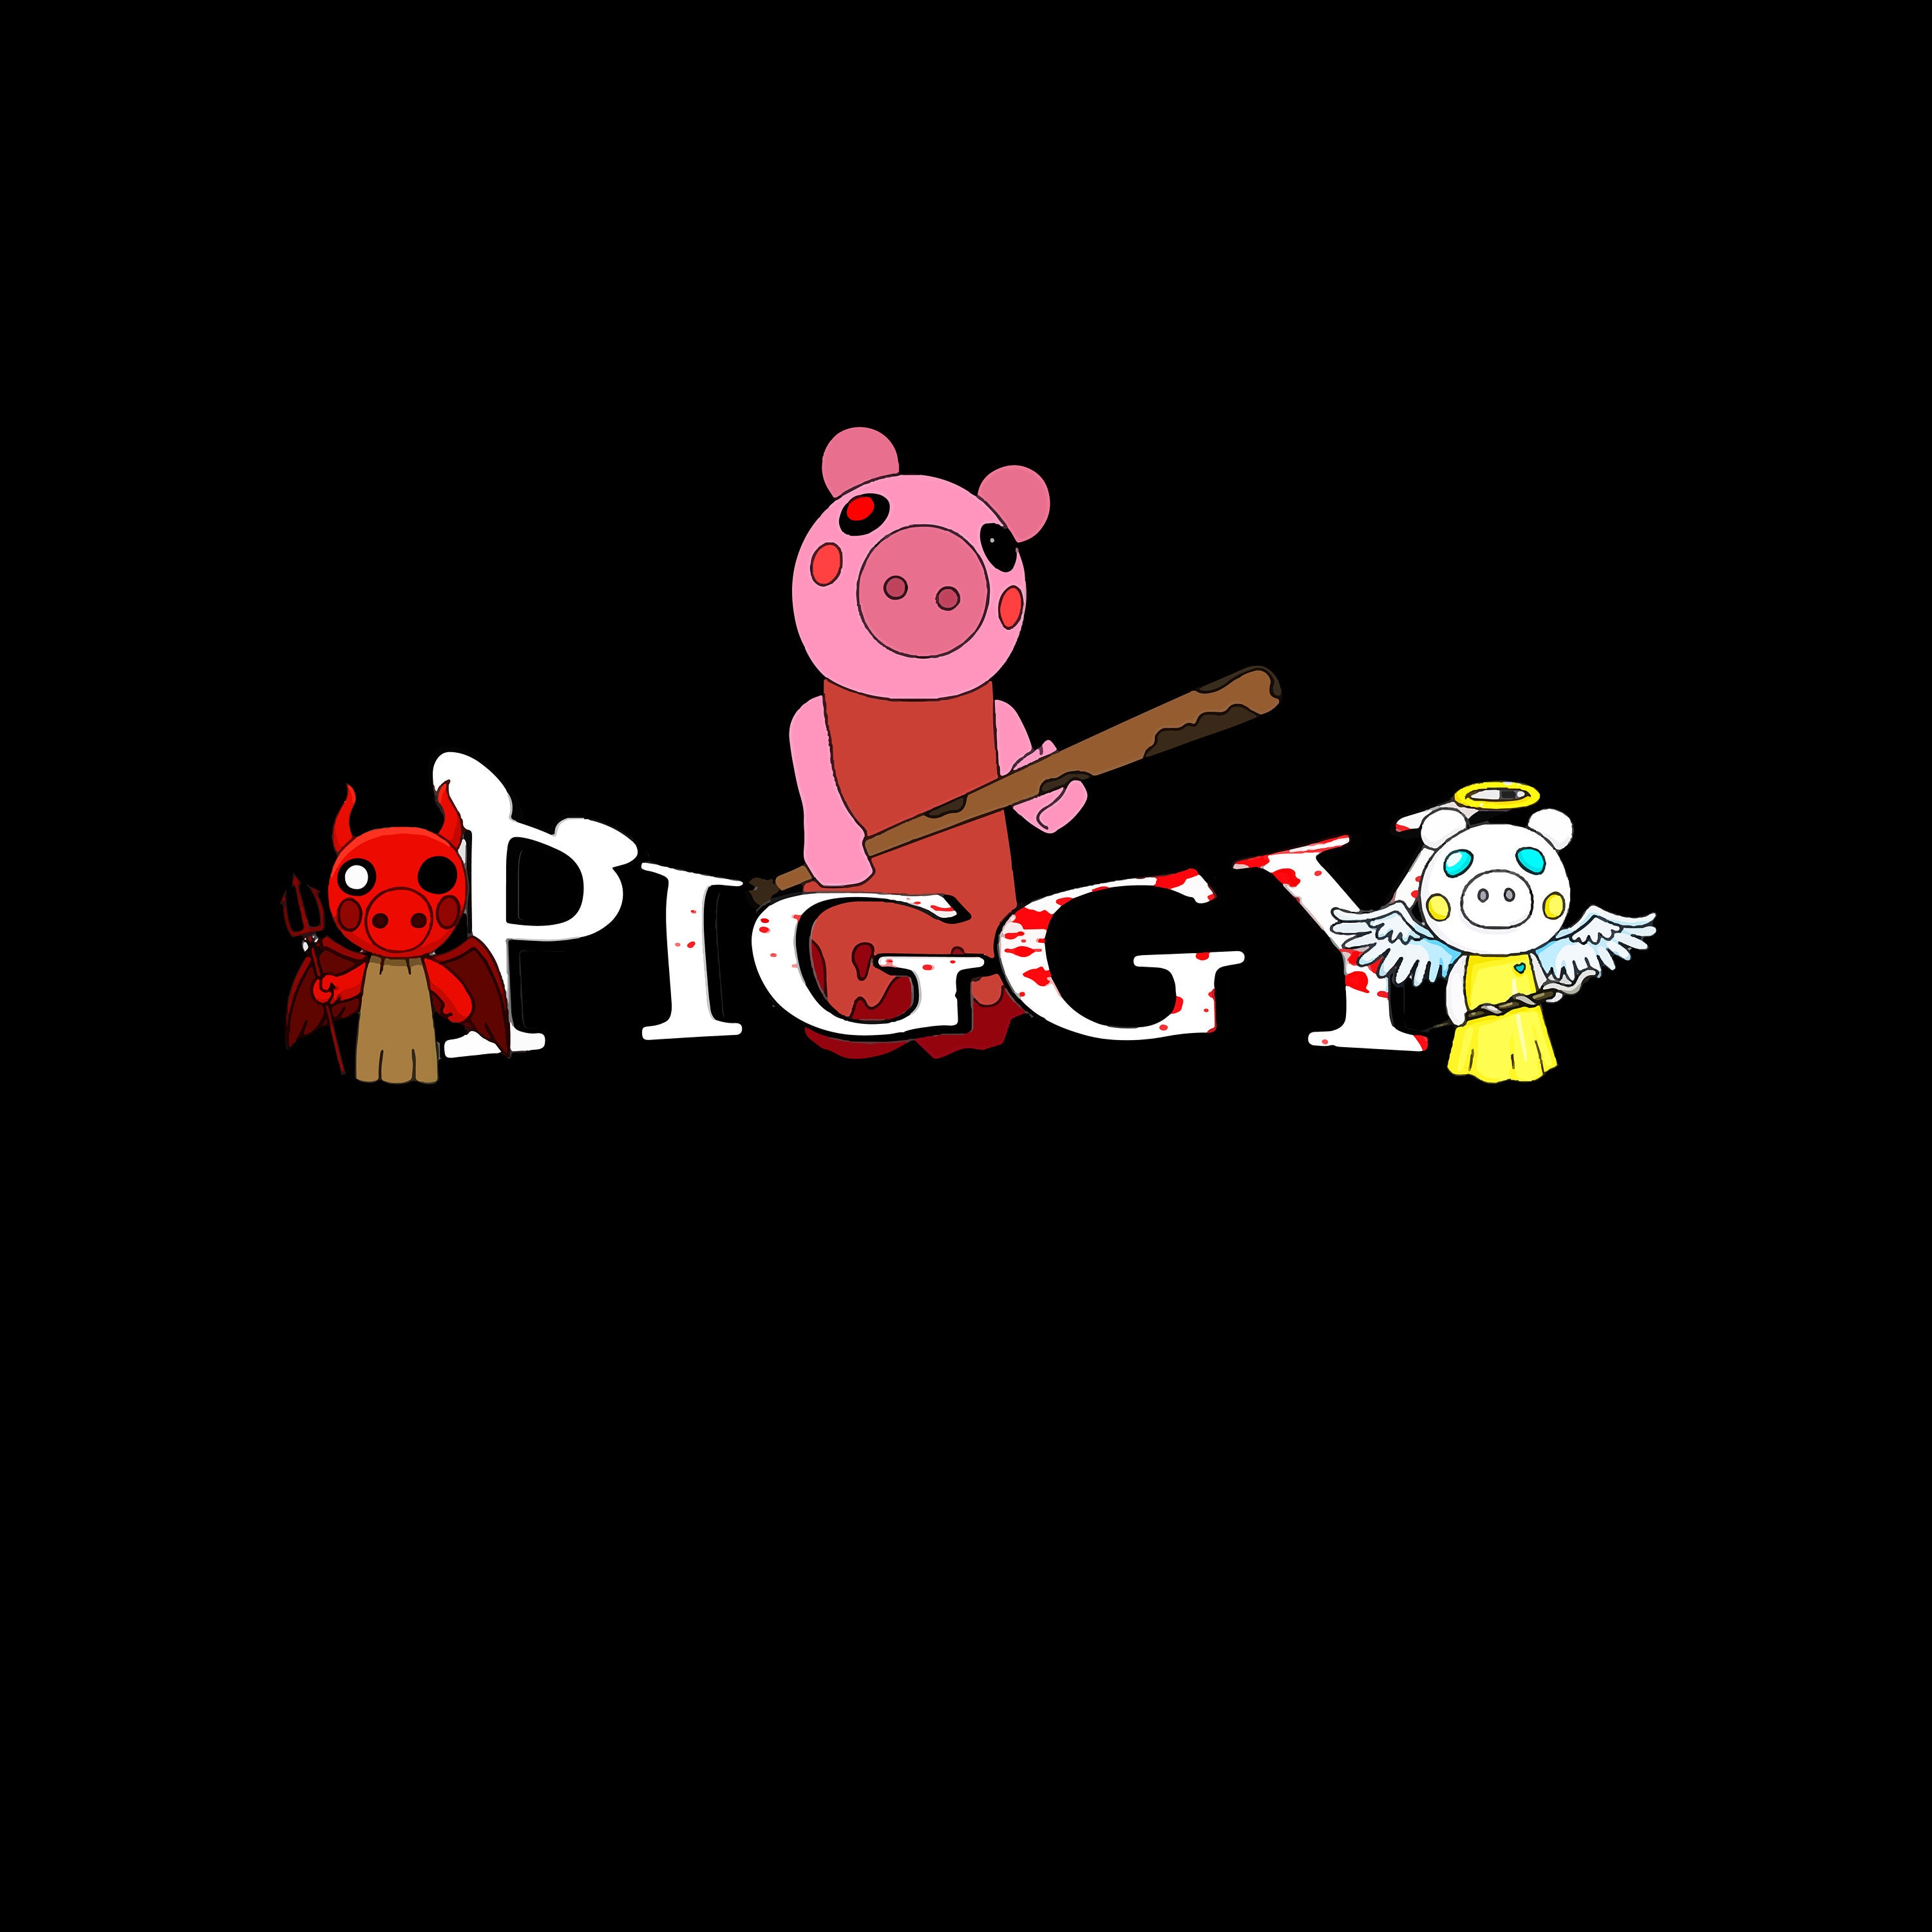 Roblox Piggy SVGs / 15 Piggy Skins / 2 Roblox Logos